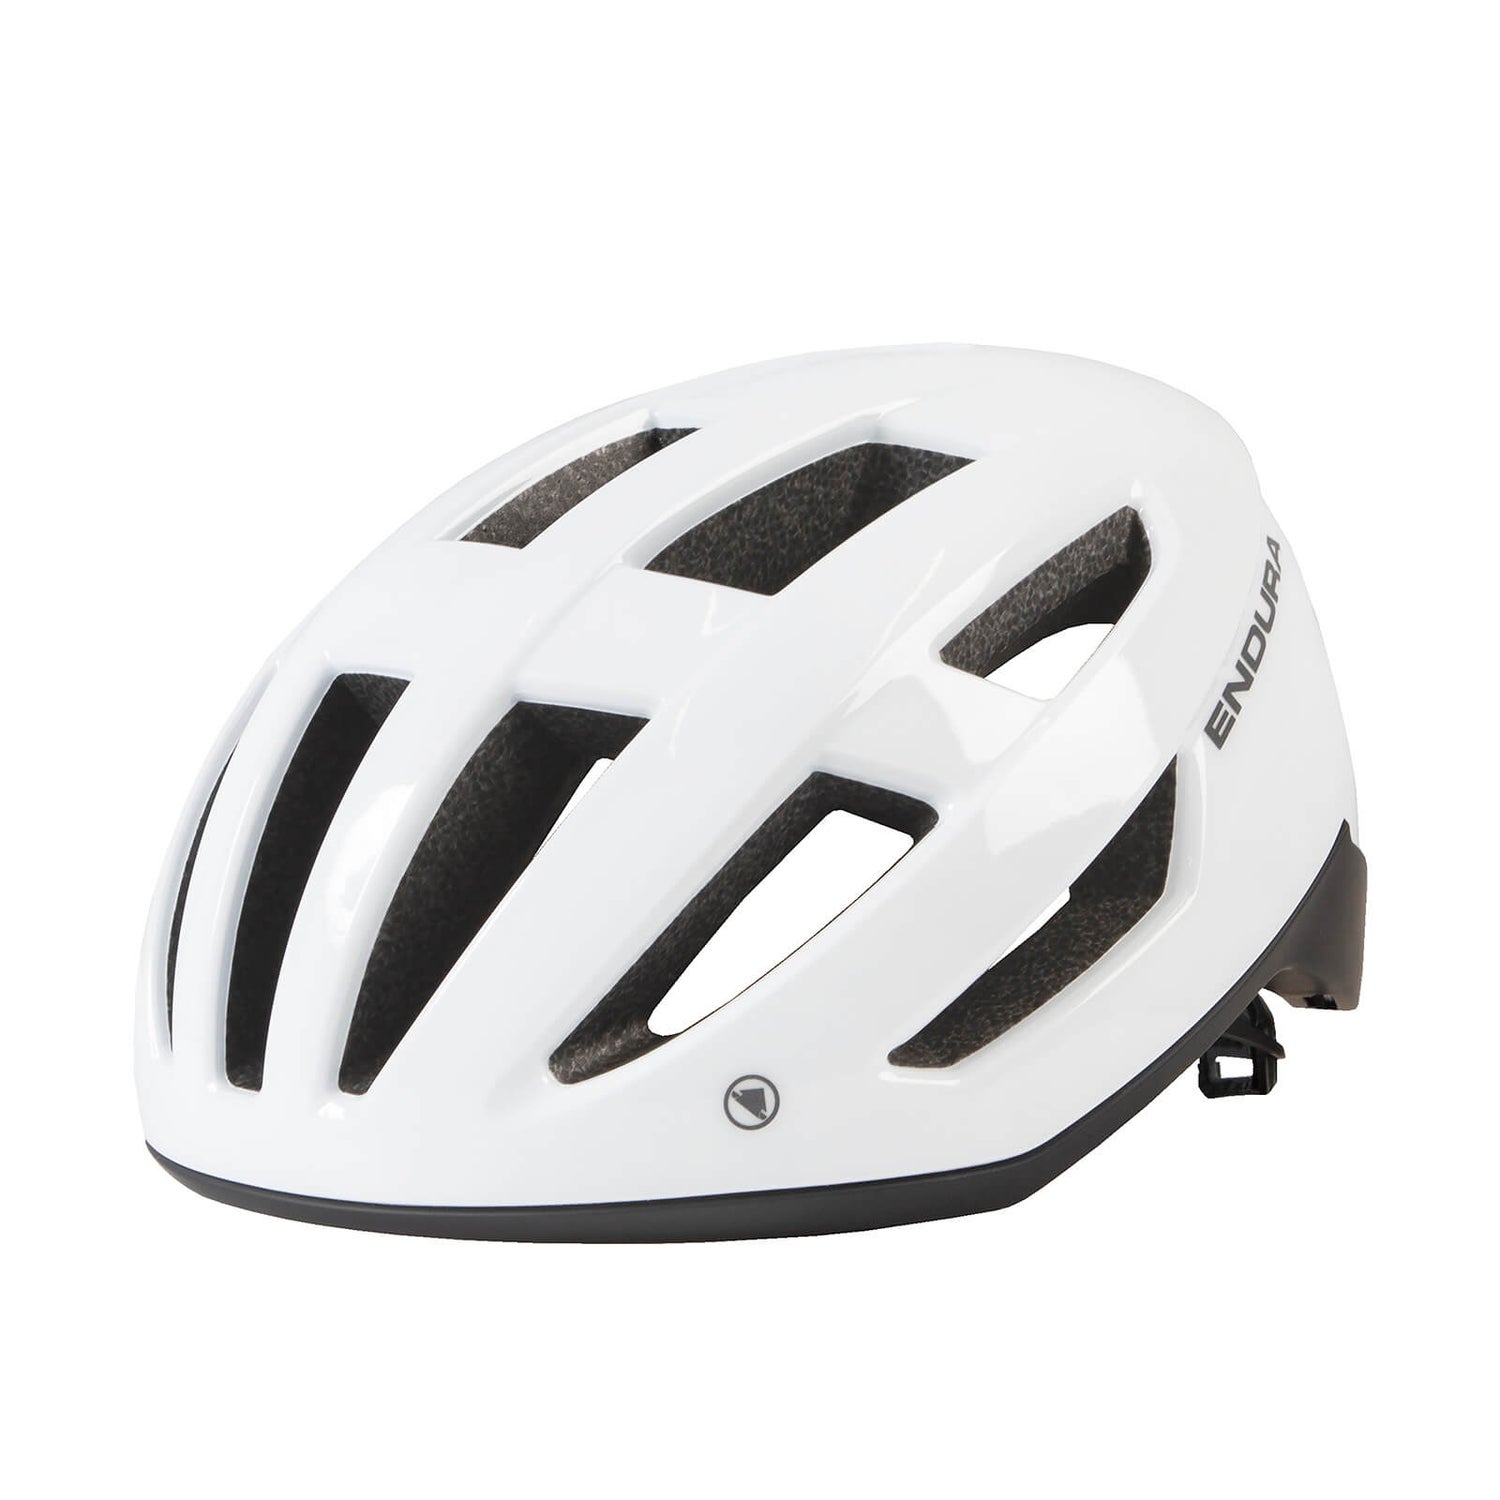 Men's Xtract Helmet - White